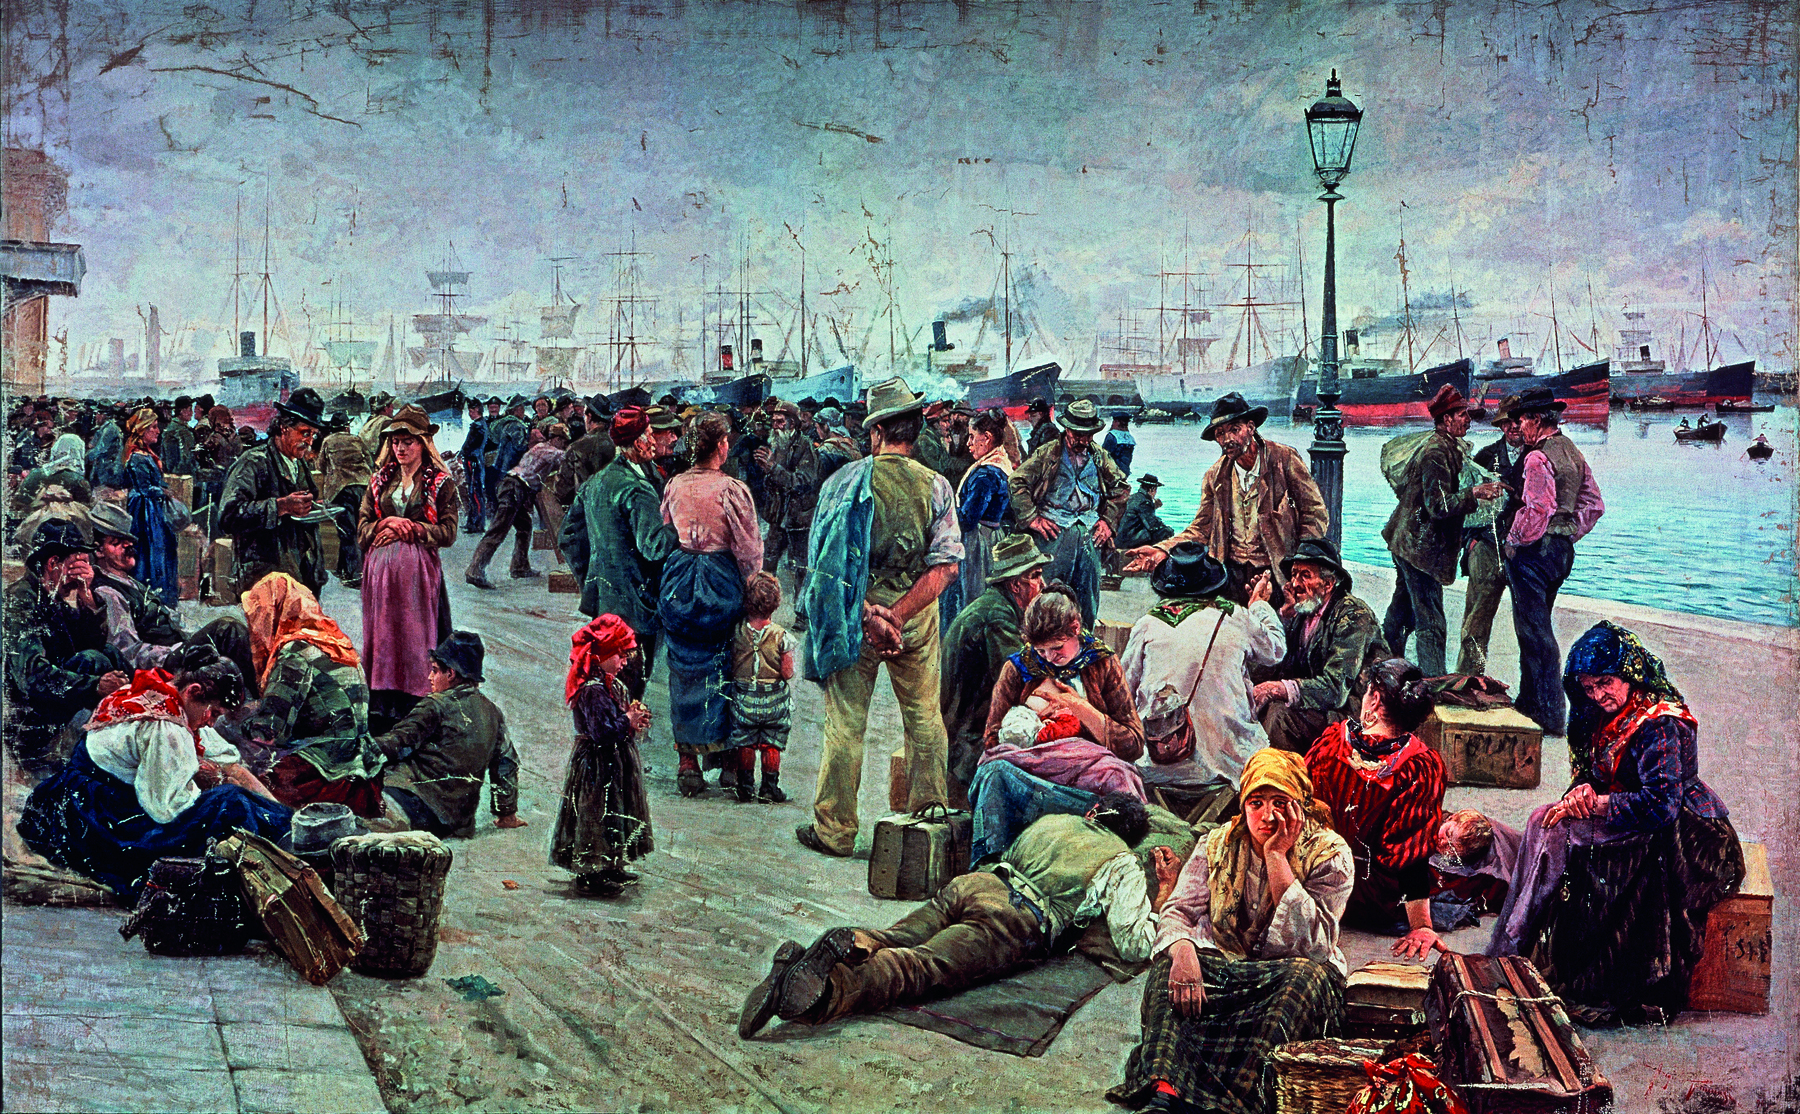 Pintura. Dezenas de pessoas, crianças, homens e mulheres, amontoados em um porto, com malas e baús, nas margens de águas com diversas embarcações à vela e vapor.